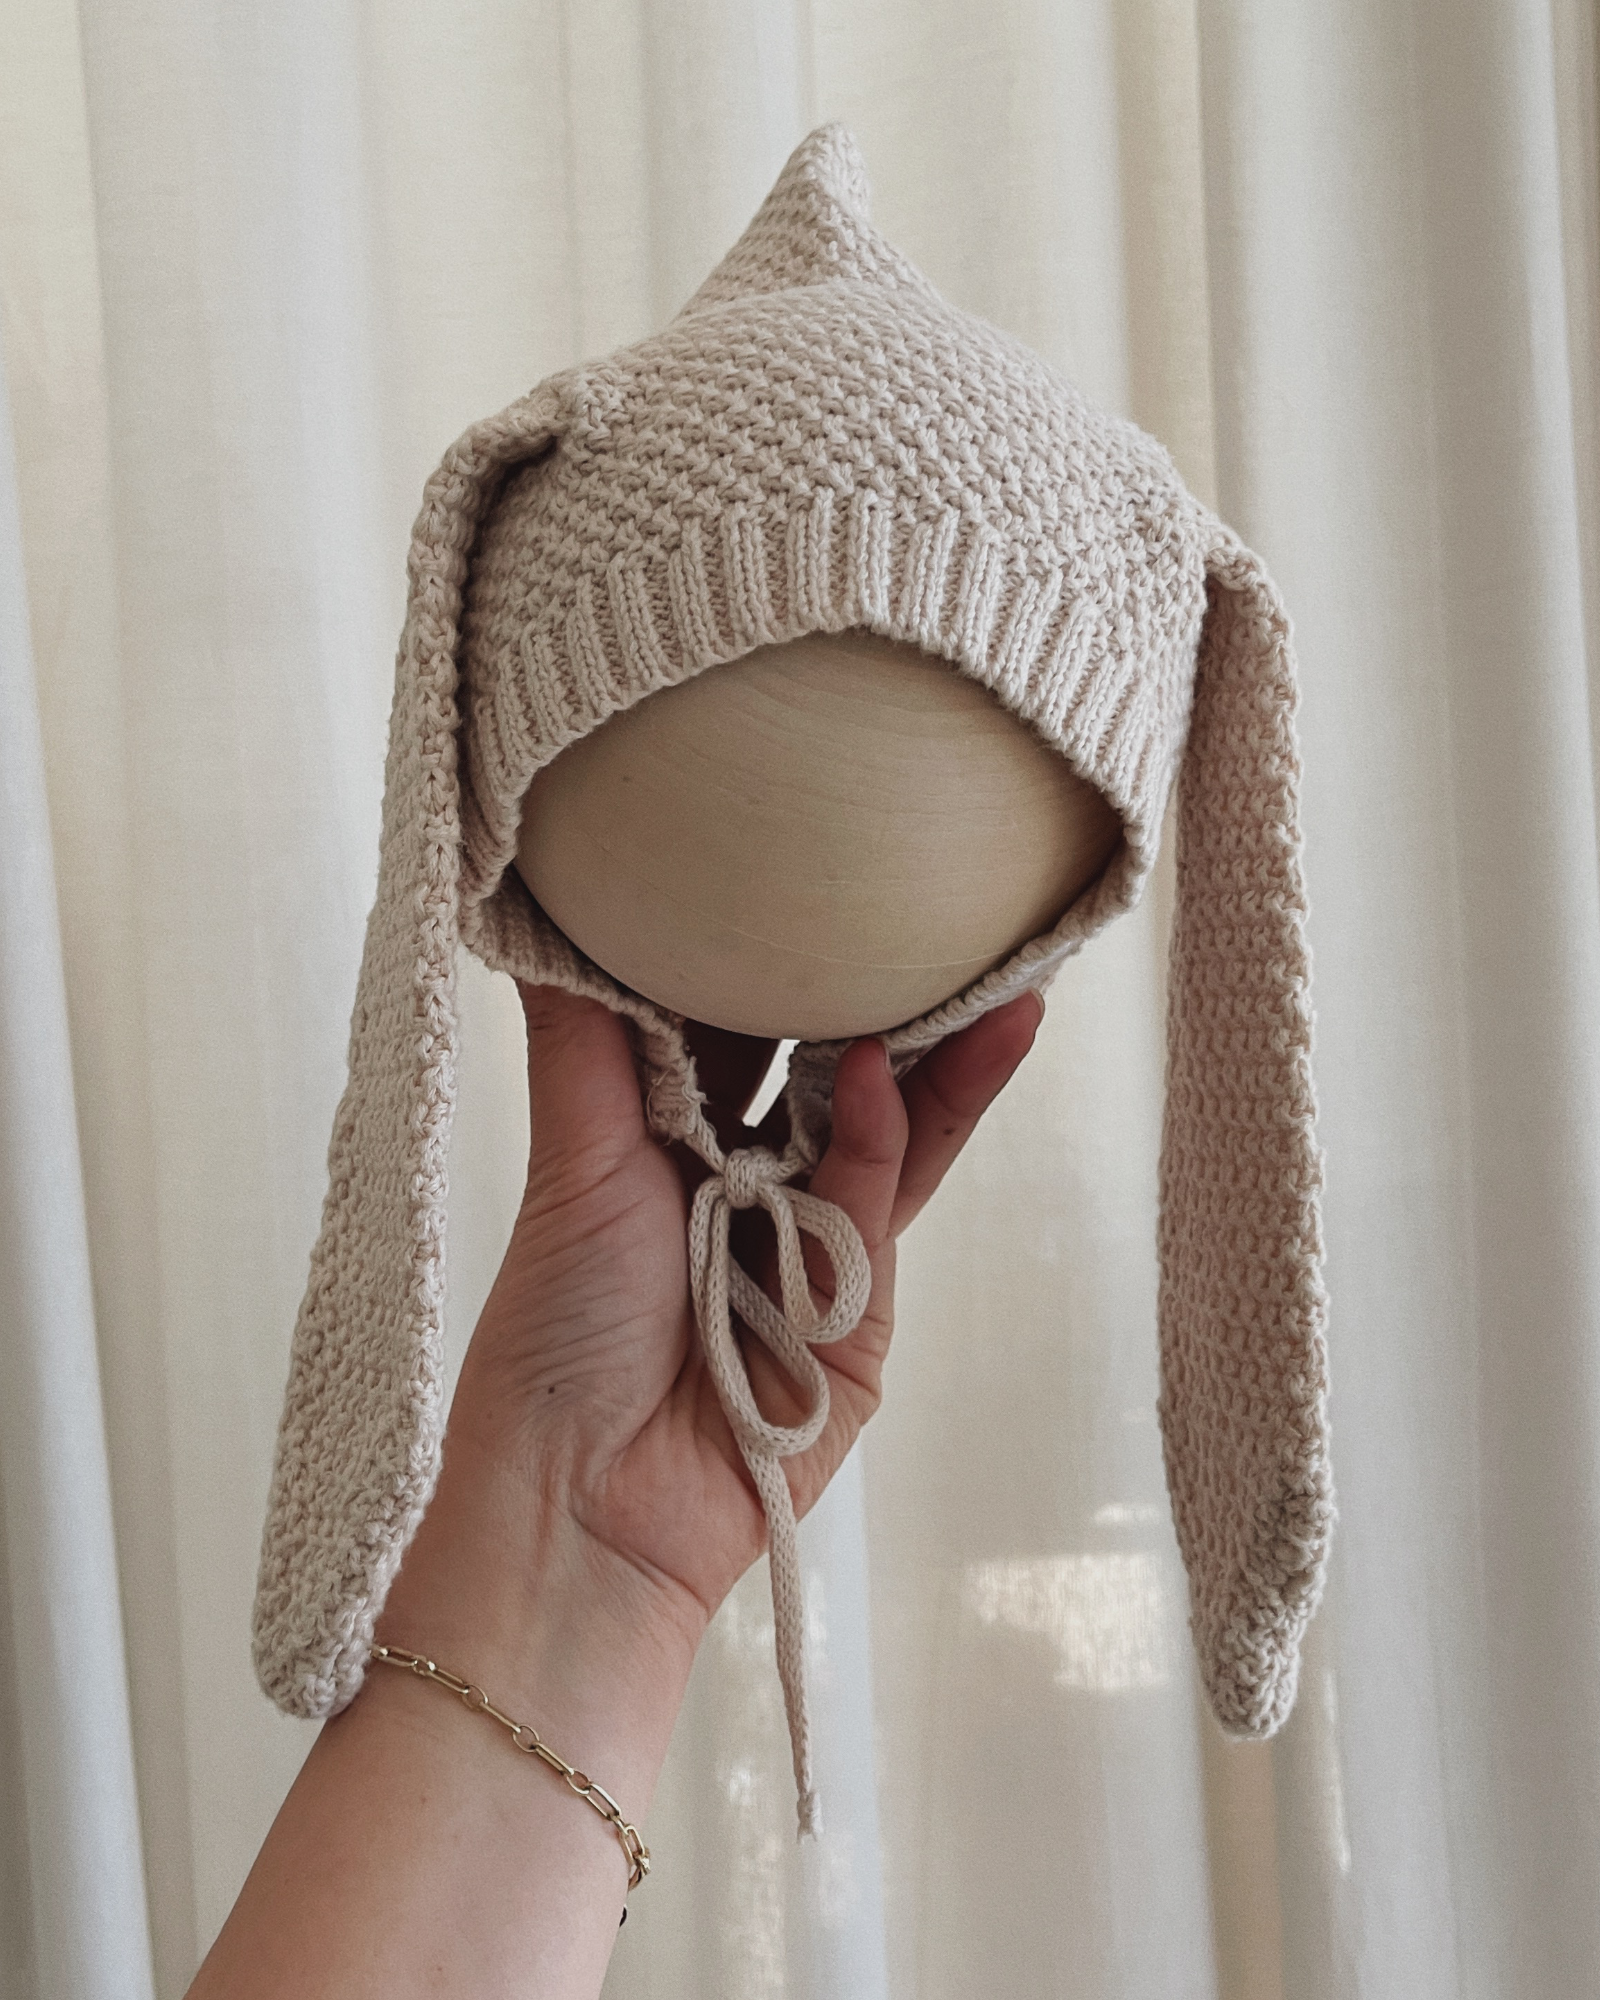 Knit Pixie Bunny Bonnet. Cream